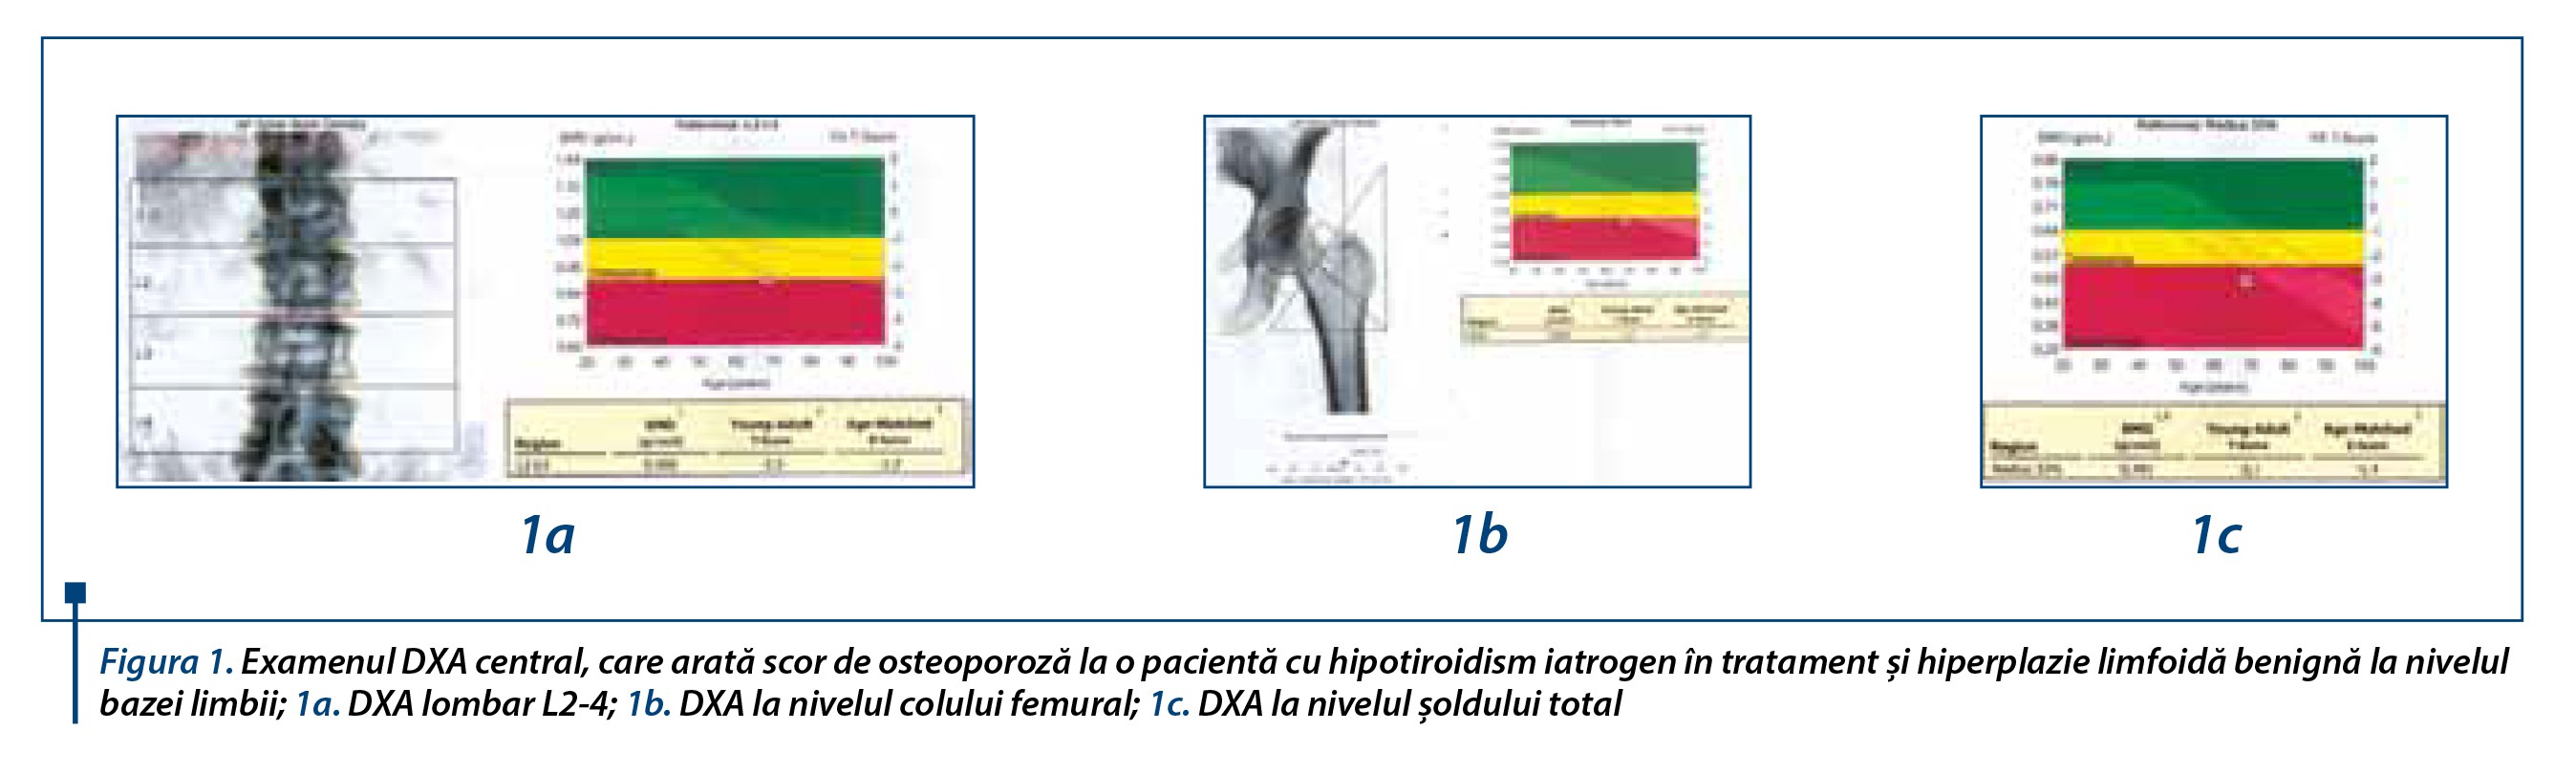 Figura 1. Examenul DXA central, care arată scor de osteoporoză la o pacientă cu hipotiroidism iatrogen în tratament şi hiperplazie limfoidă benignă la nivelul bazei limbii; 1a. DXA lombar L2-4; 1b. DXA la nivelul colului femural; 1c. DXA la nivelul şoldului total